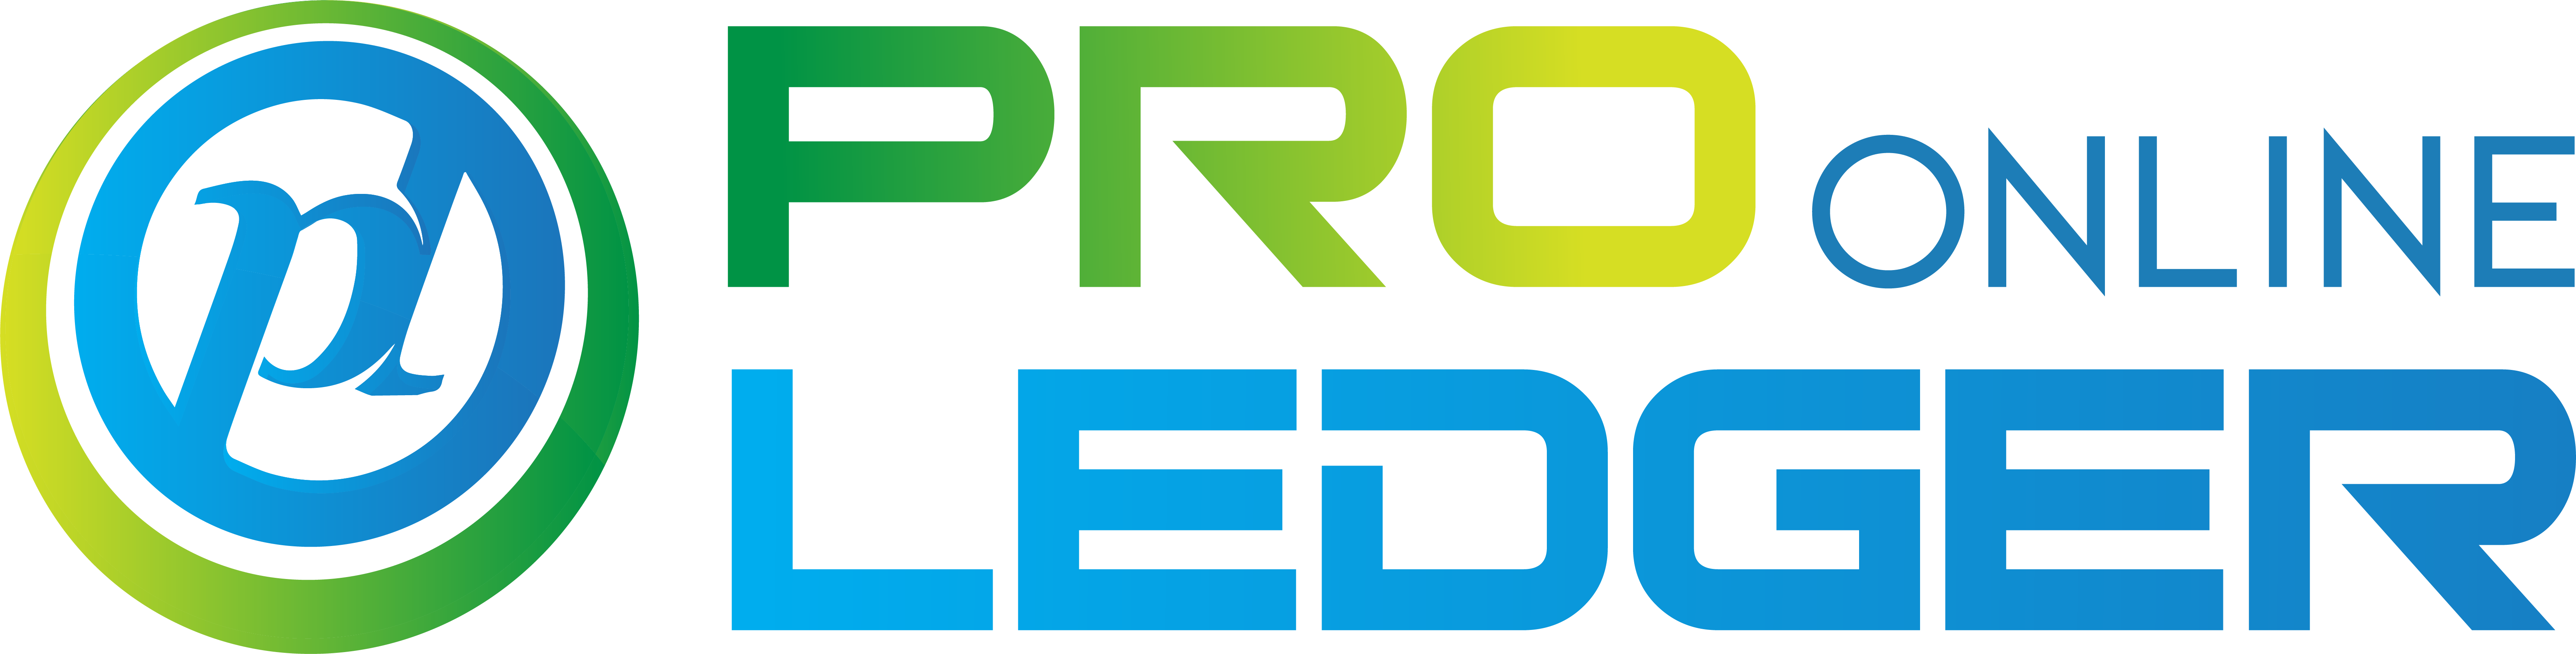 Pro Ledger Online footer logo